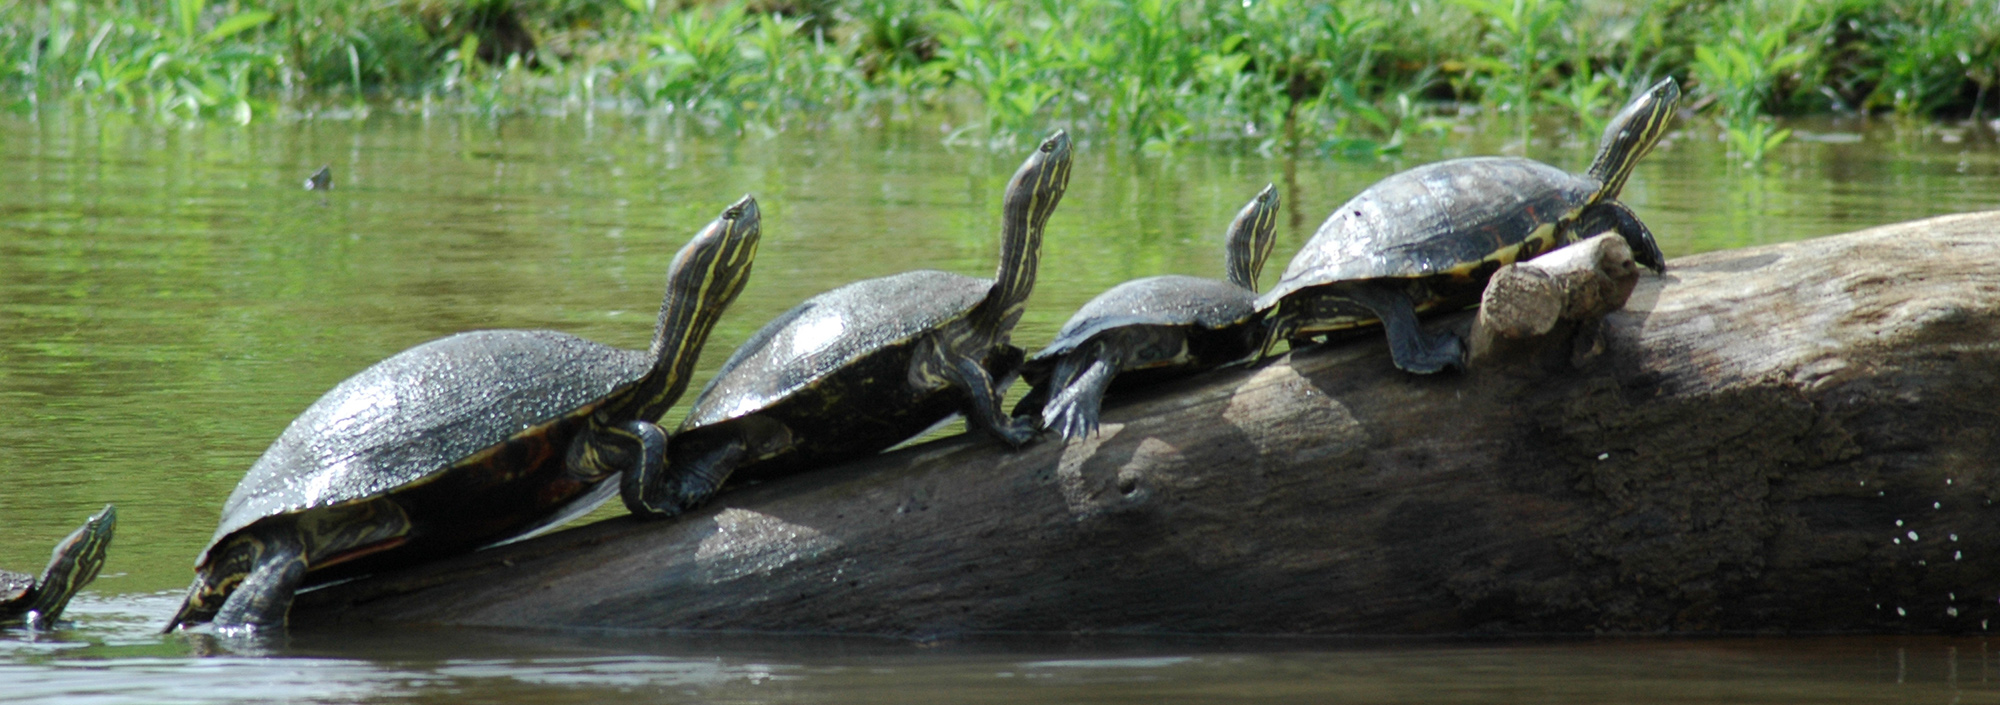 Wasserschildkröten auf einem Stamm am Fluss in Costa Rica